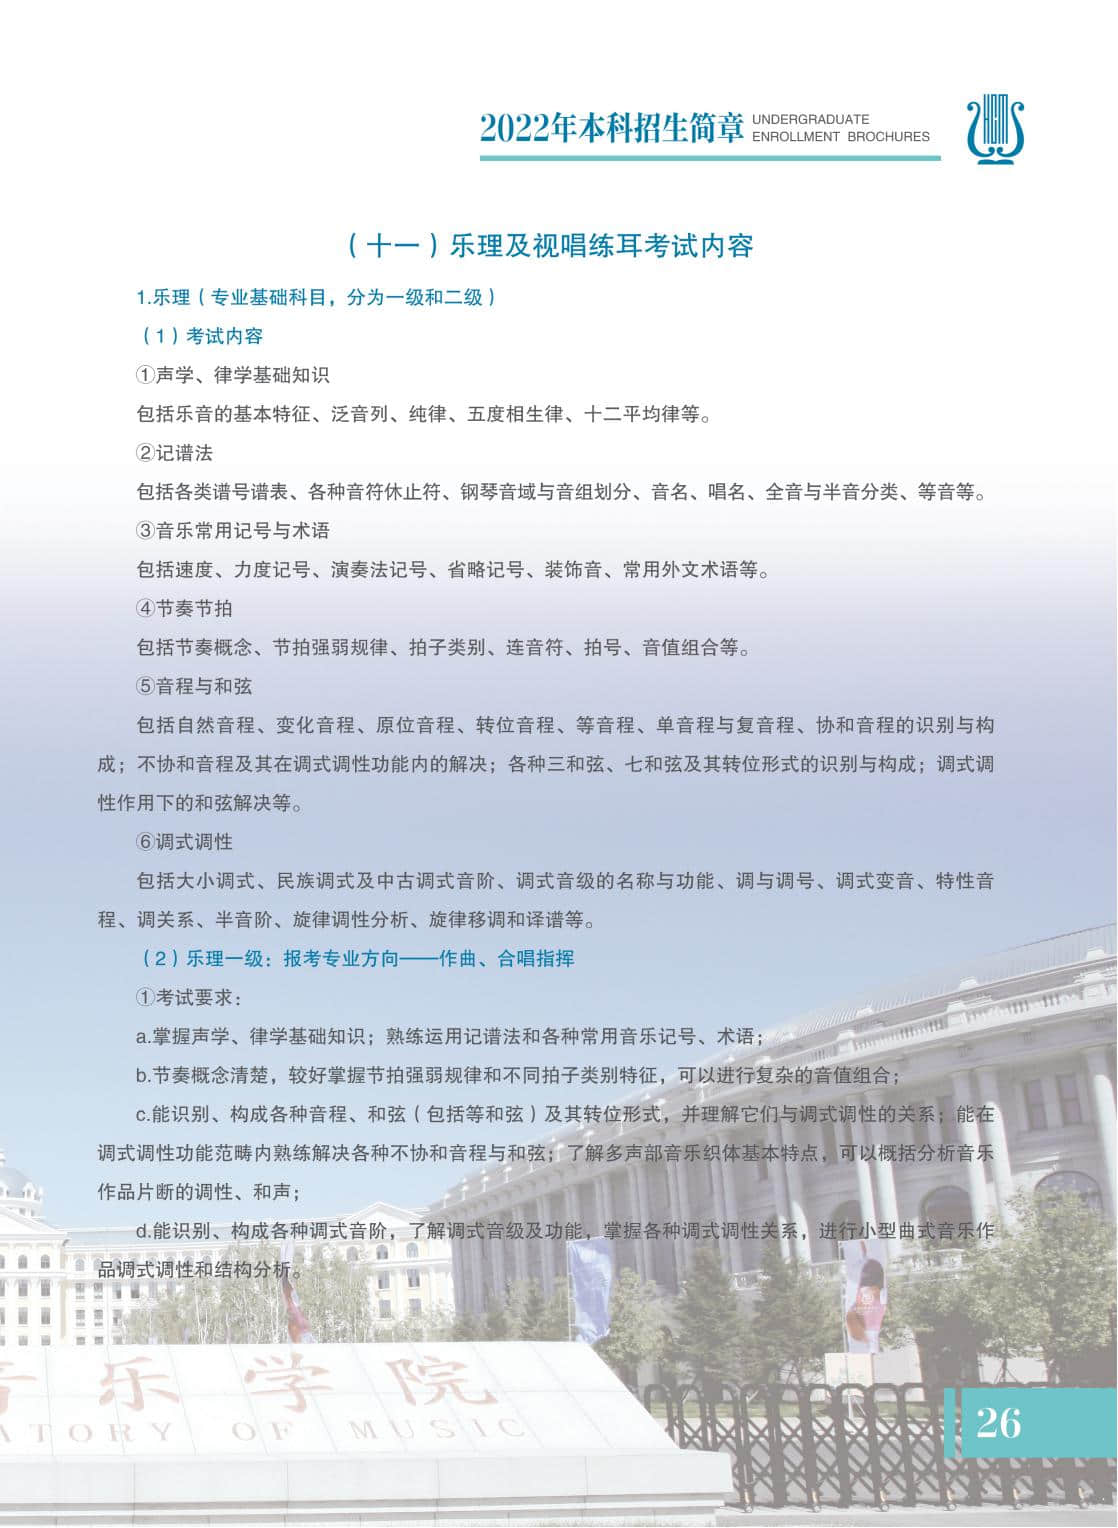 2022哈尔滨音乐学院本科招生简章公布